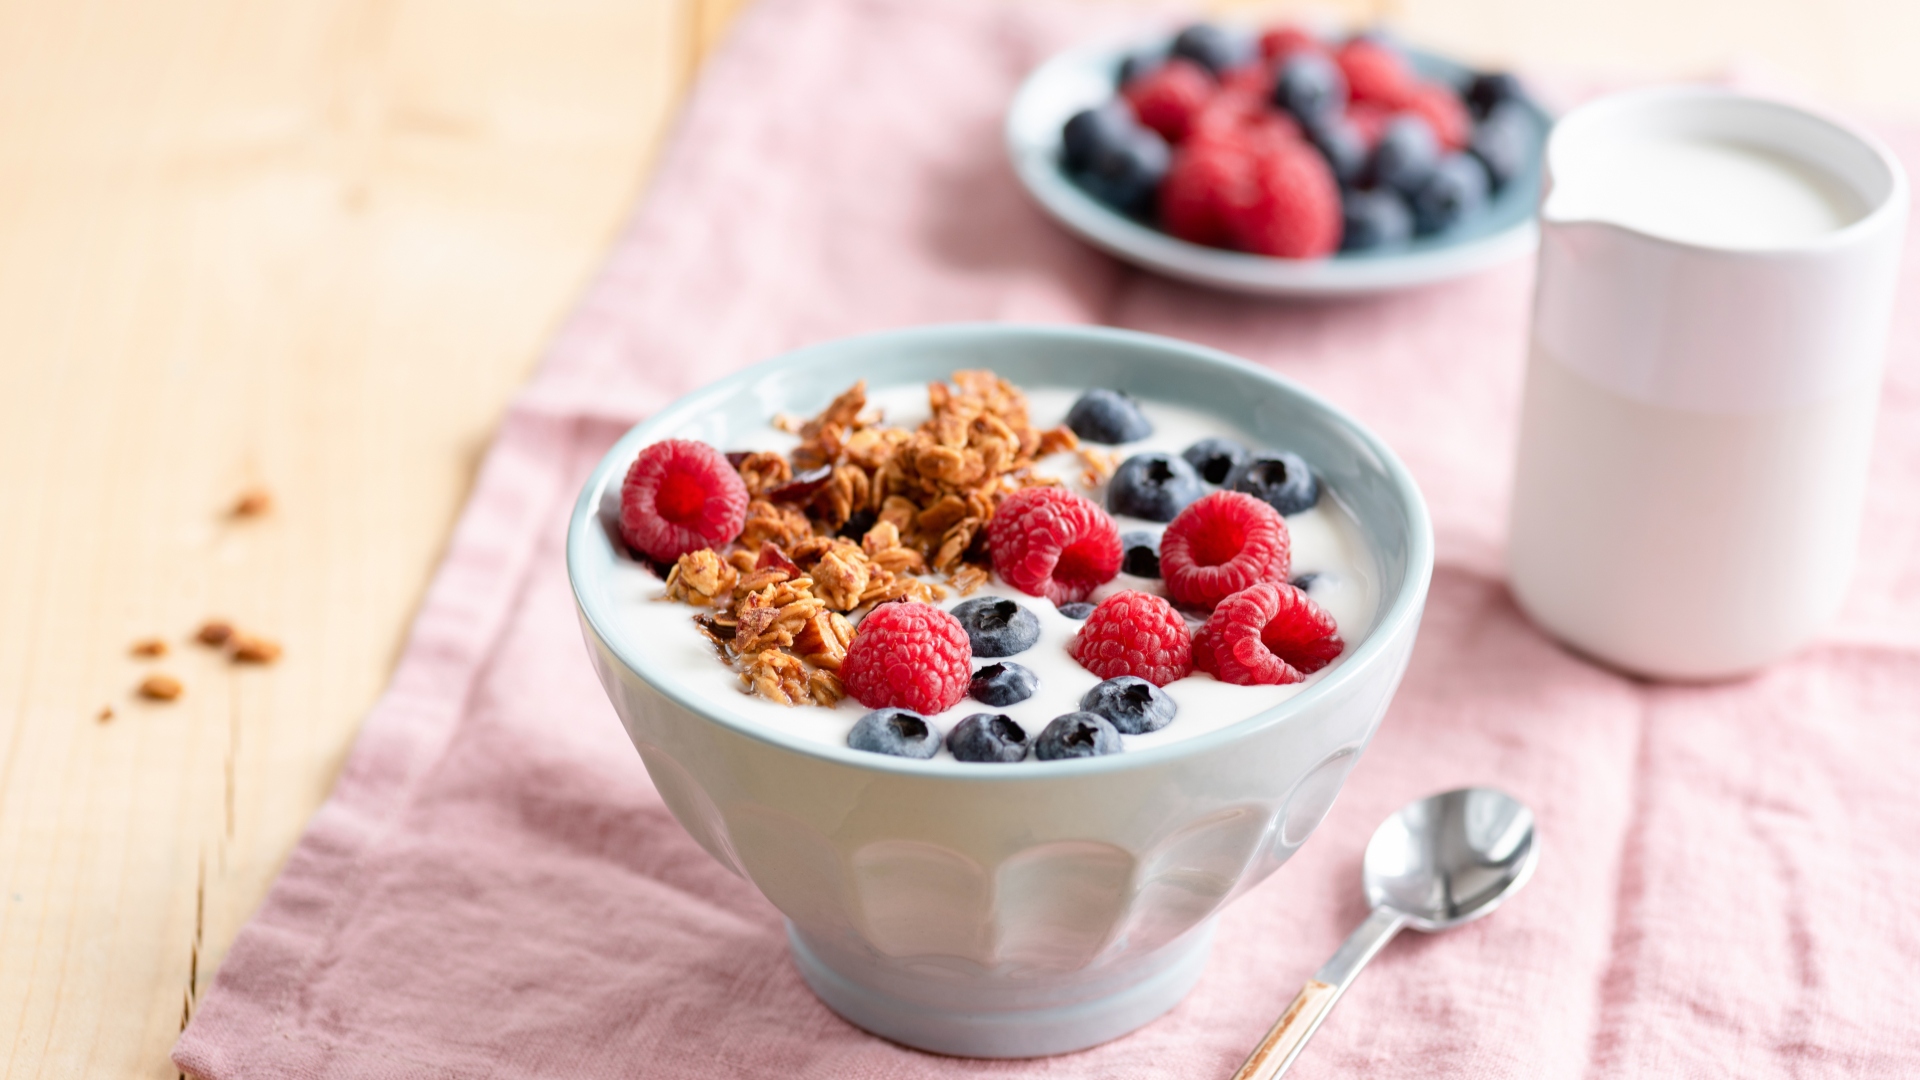 Los alimentos probióticos como el yogur pueden promover la salud mental y la función cerebral al reducir la inflamación y aumentar la producción de neurotransmisores (Getty)